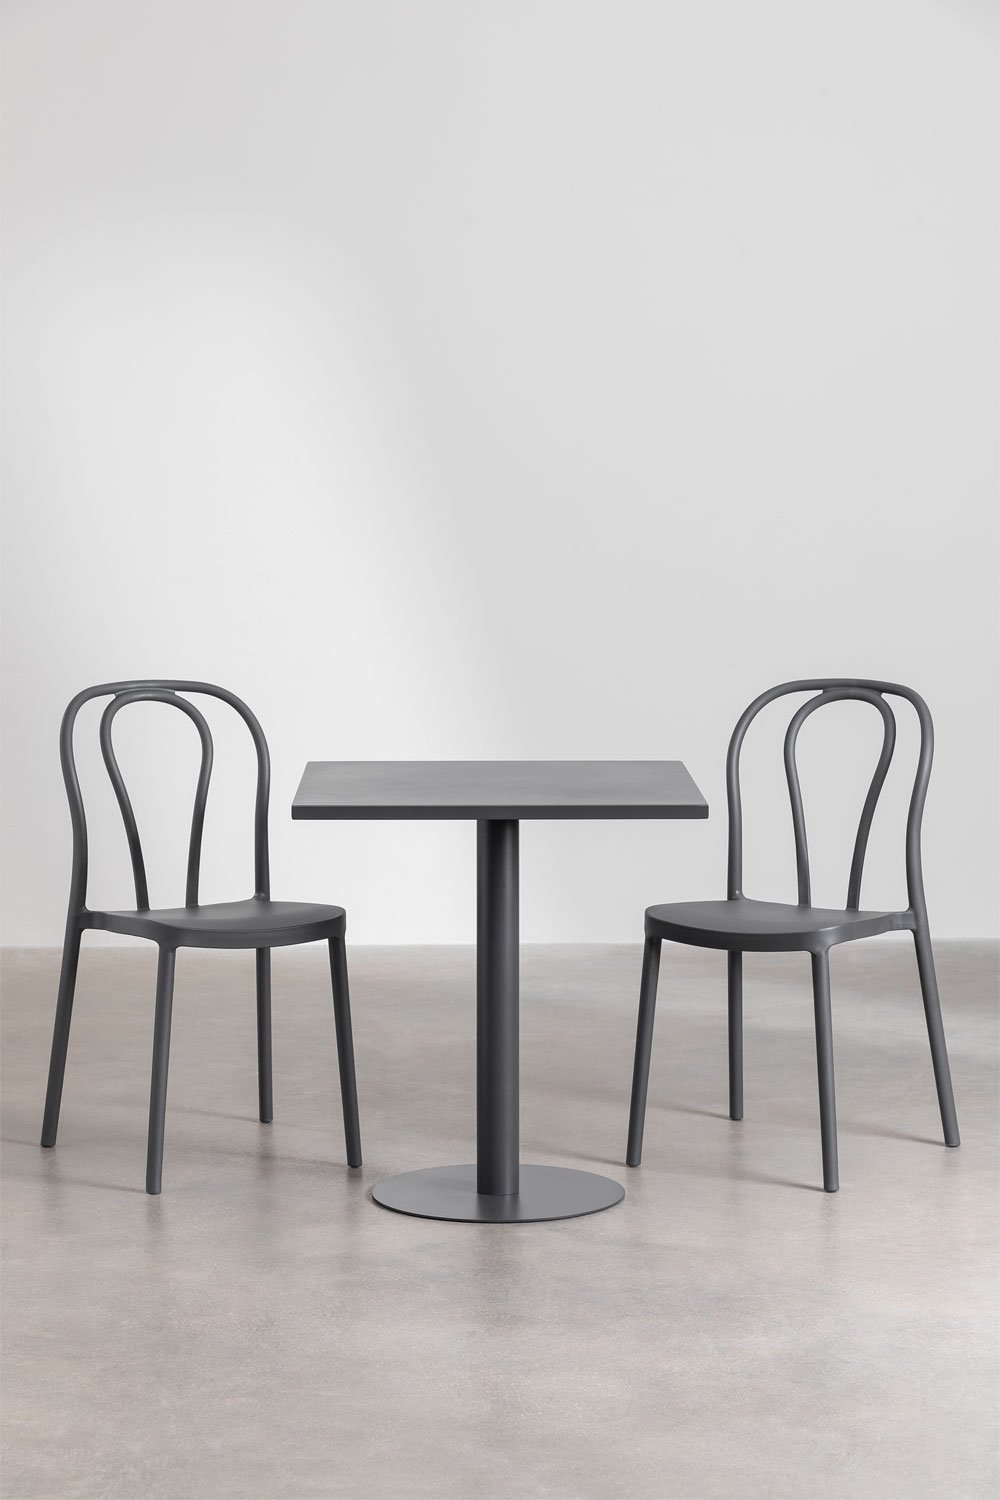 Tuinset met een vierkante tafel 70x70 cm en 2 stoelen Mizzi, galerij beeld 1